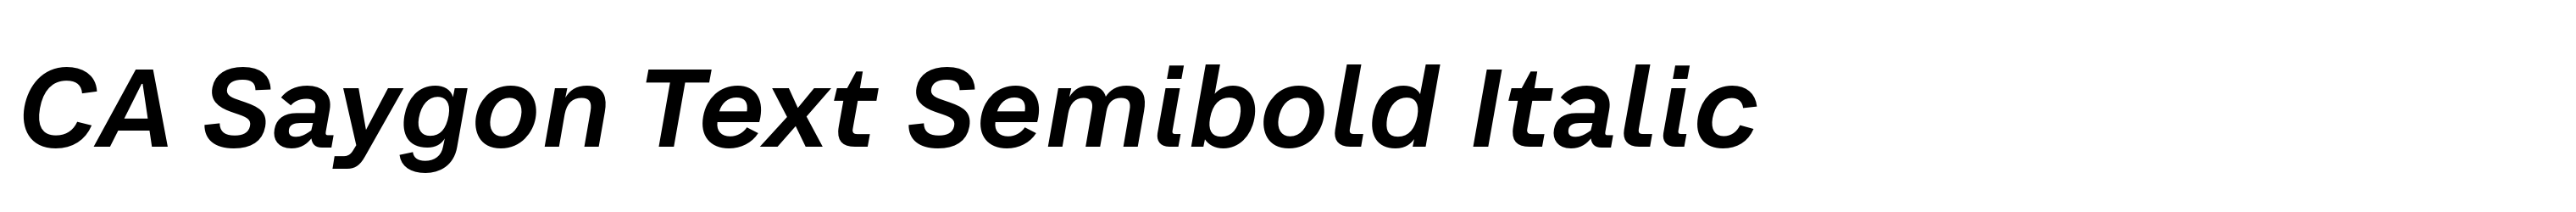 CA Saygon Text Semibold Italic